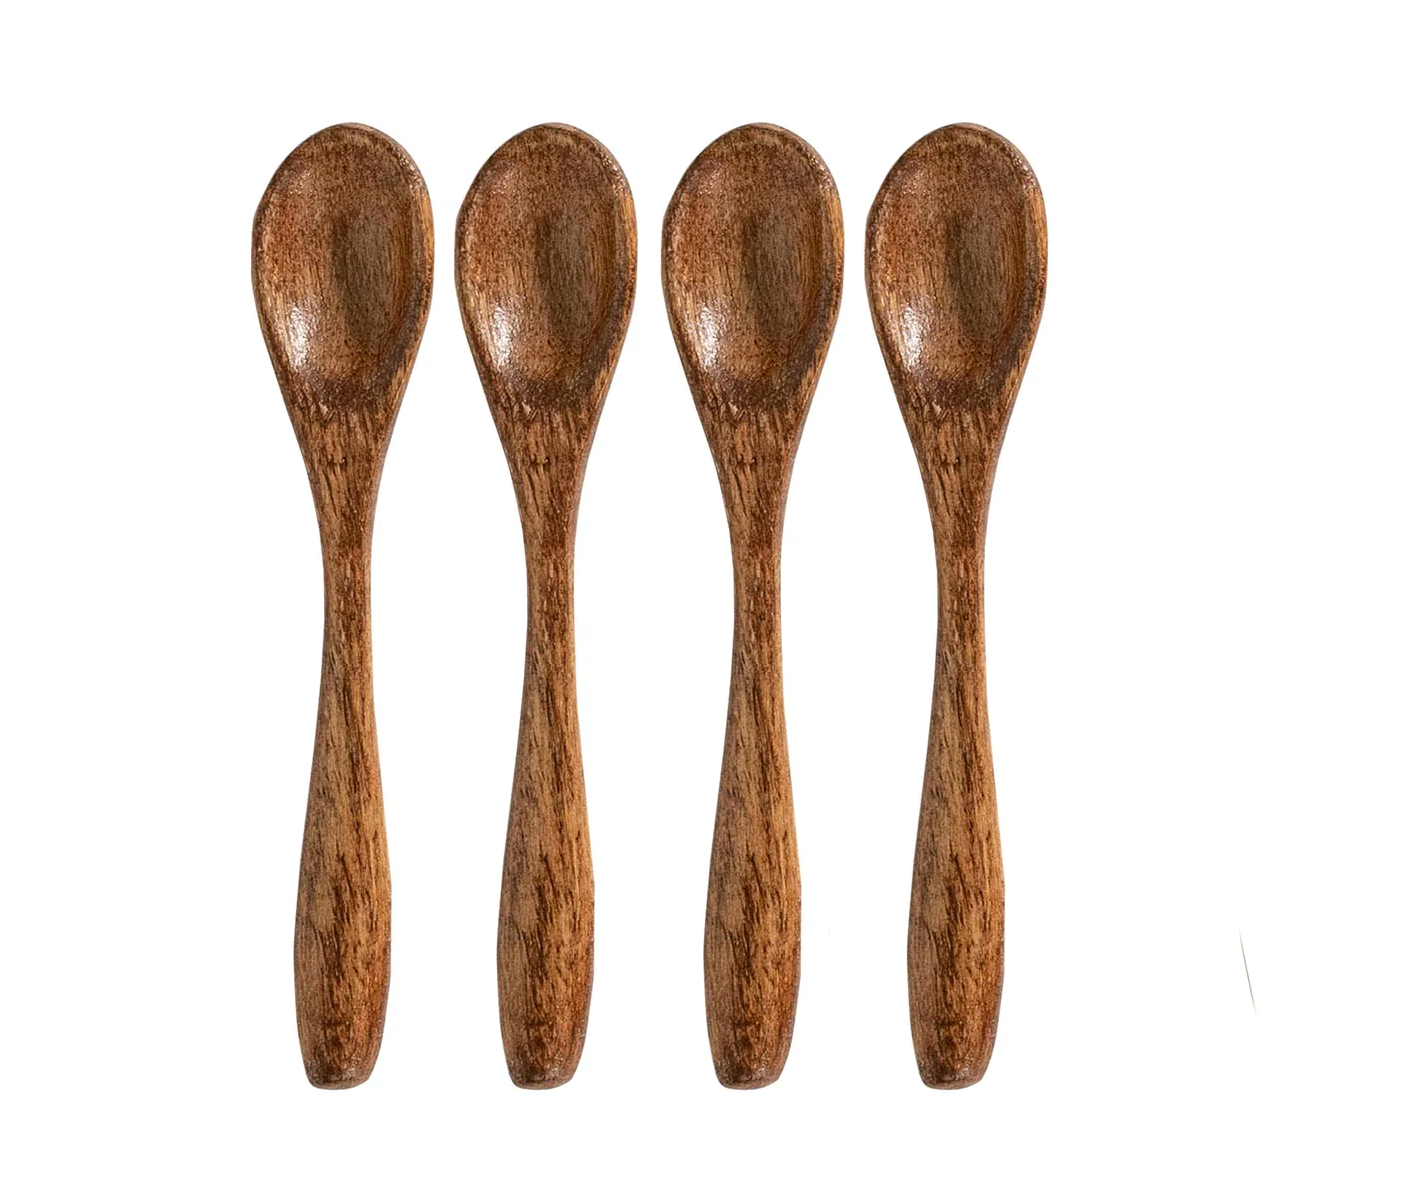 Bilbao Petite Wooden Spoons - Set of 4